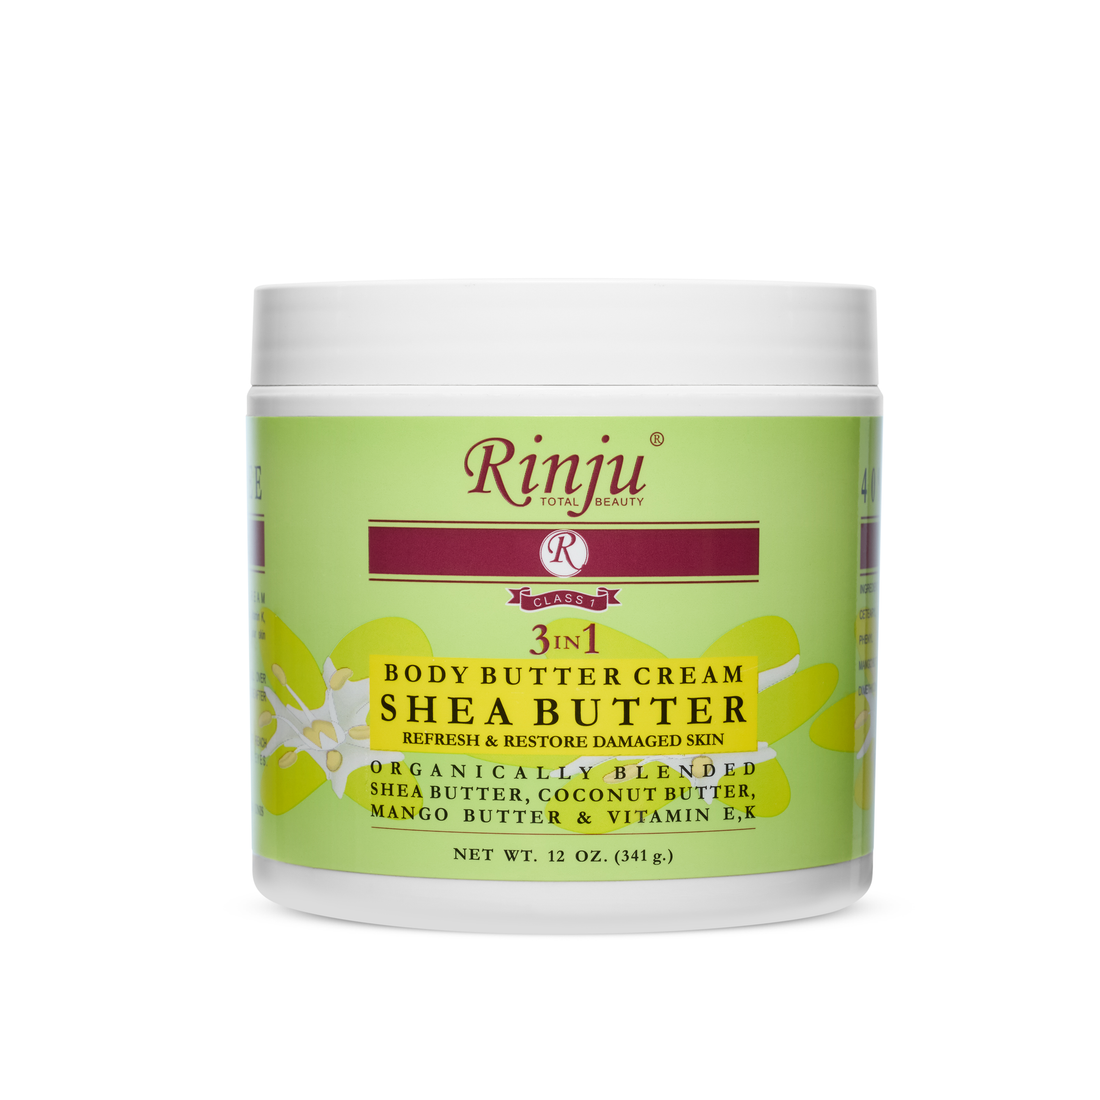 Rinju 3 in 1 Shea Body Butter Cream